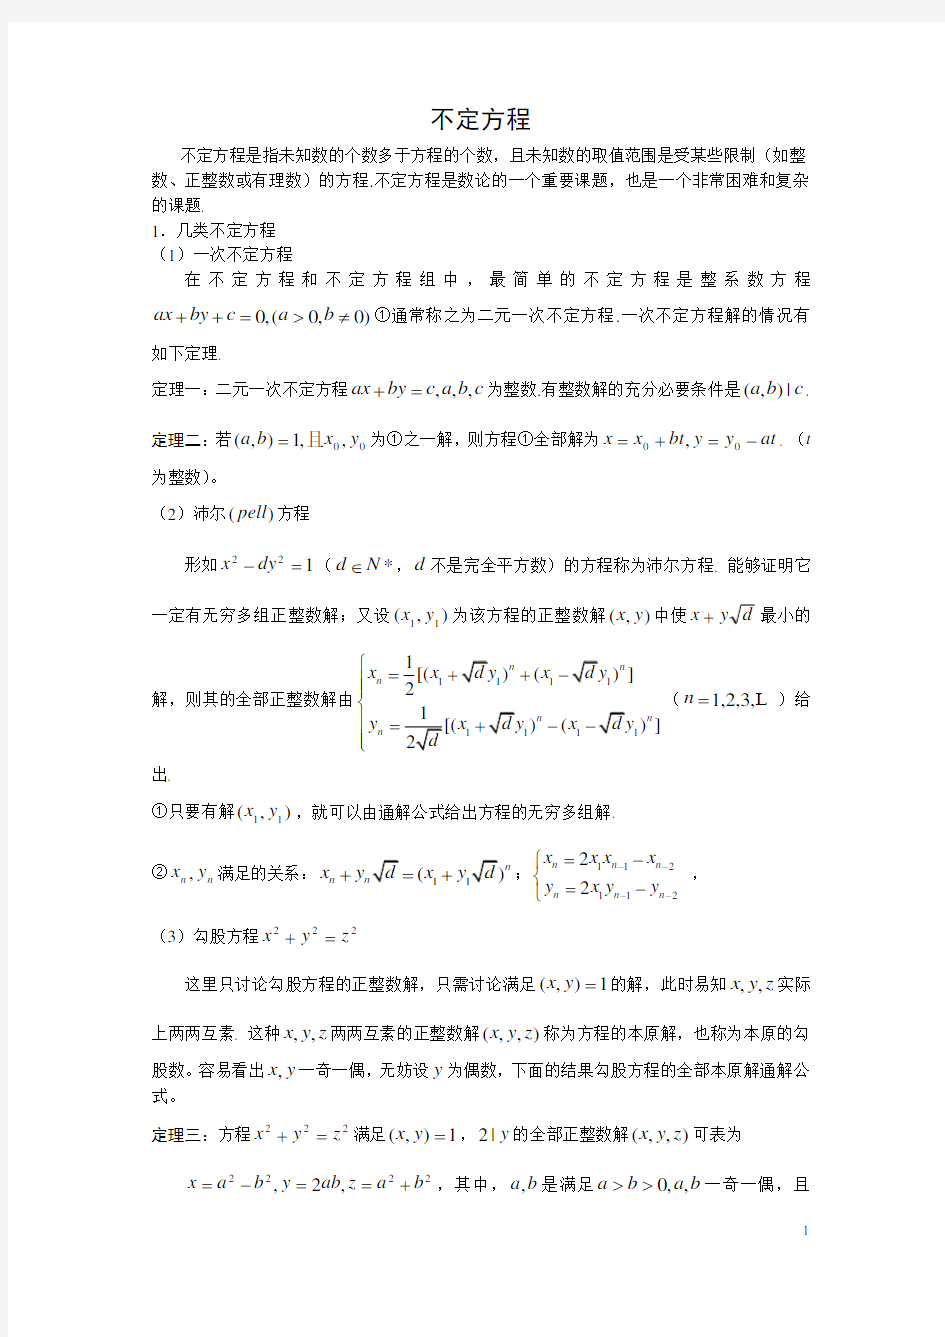 完整word版,高中数学竞赛辅导-初等数论(不定方程)